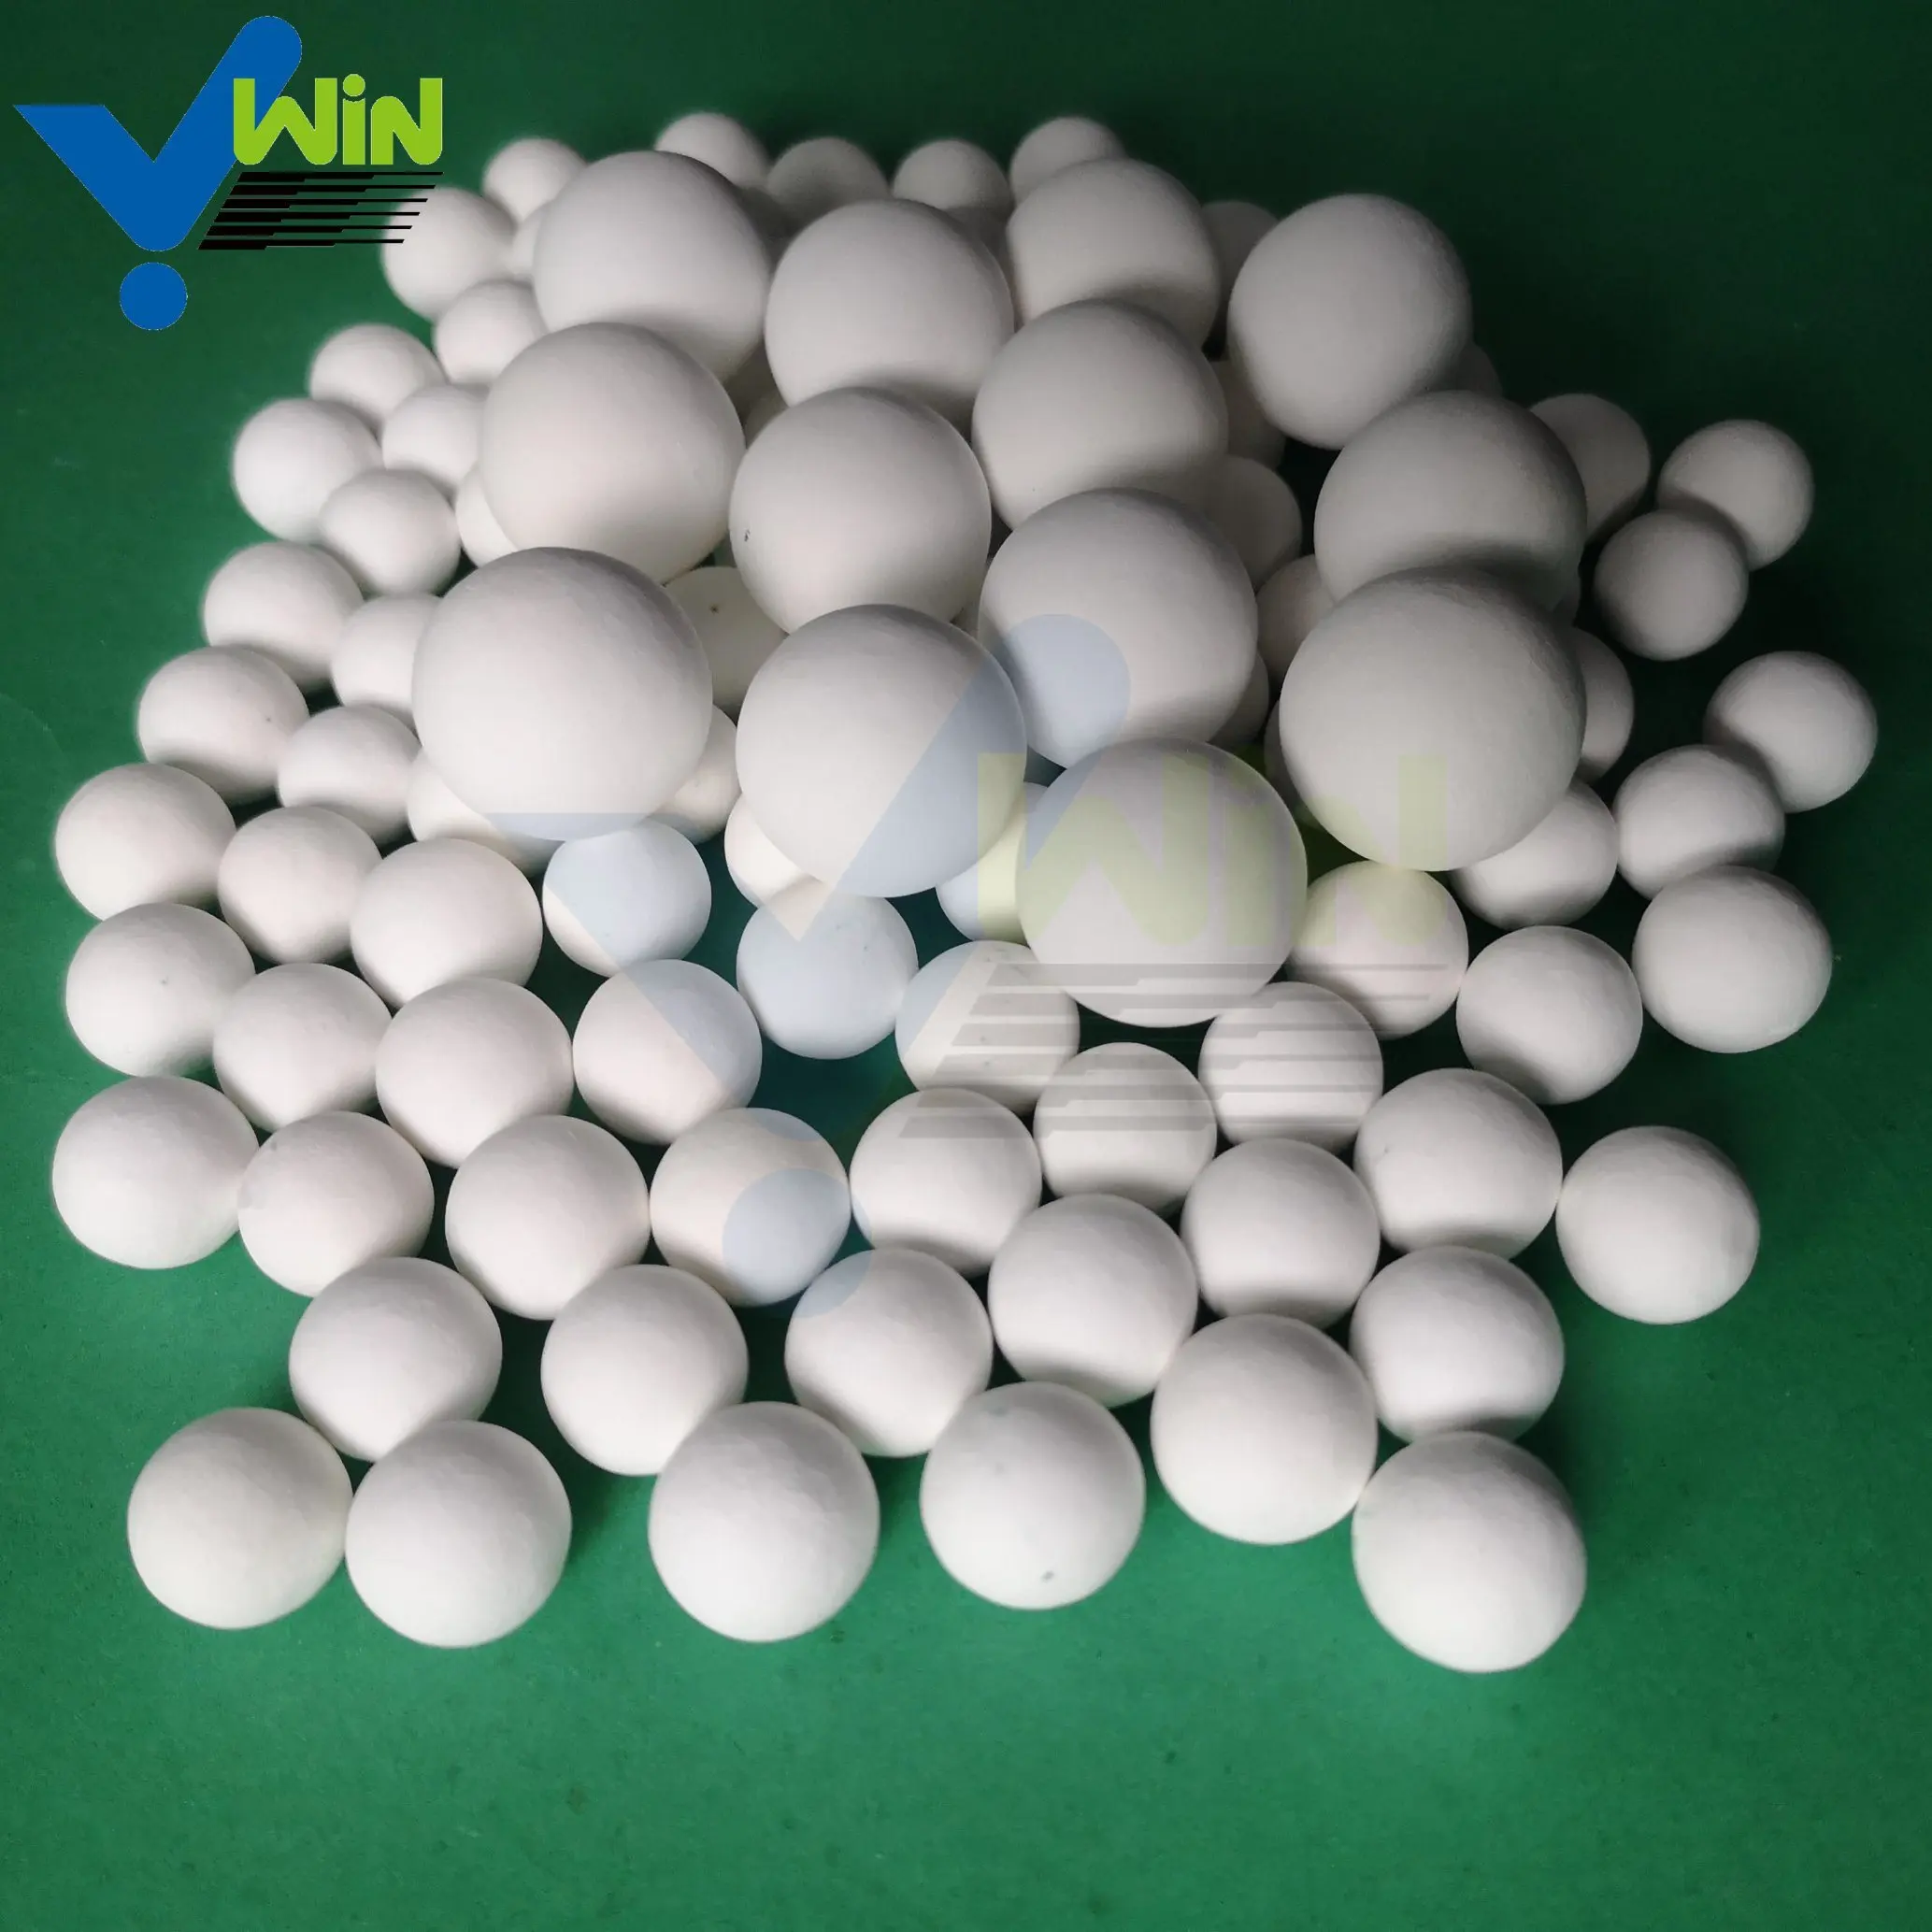 जिबो विन-सिरेमिक निर्माता पेट्रोकेमिकल उद्योग के लिए समर्थन मीडिया के अक्रिय एल्युमिना सिरेमिक गेंदों का उत्पादन करता है